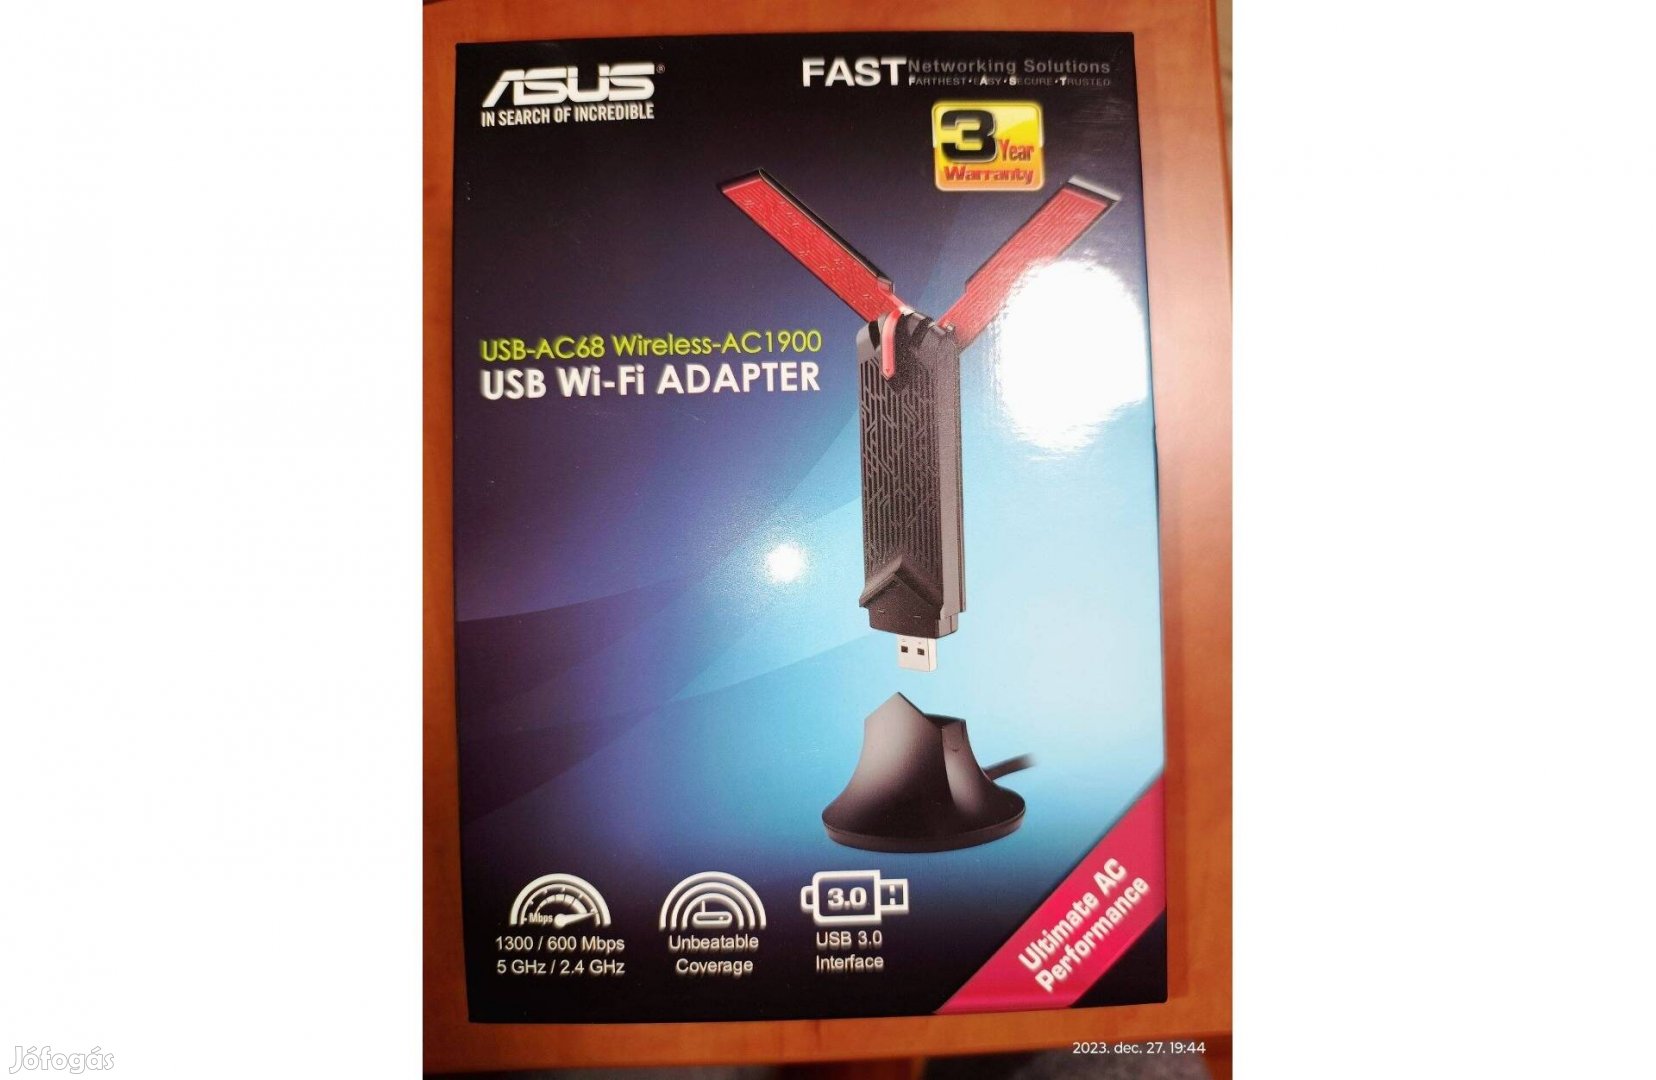 Asus USB-AC68 Wireless USB 3.0 WIFI adapter AC1900 5Ghz/2.4Ghz